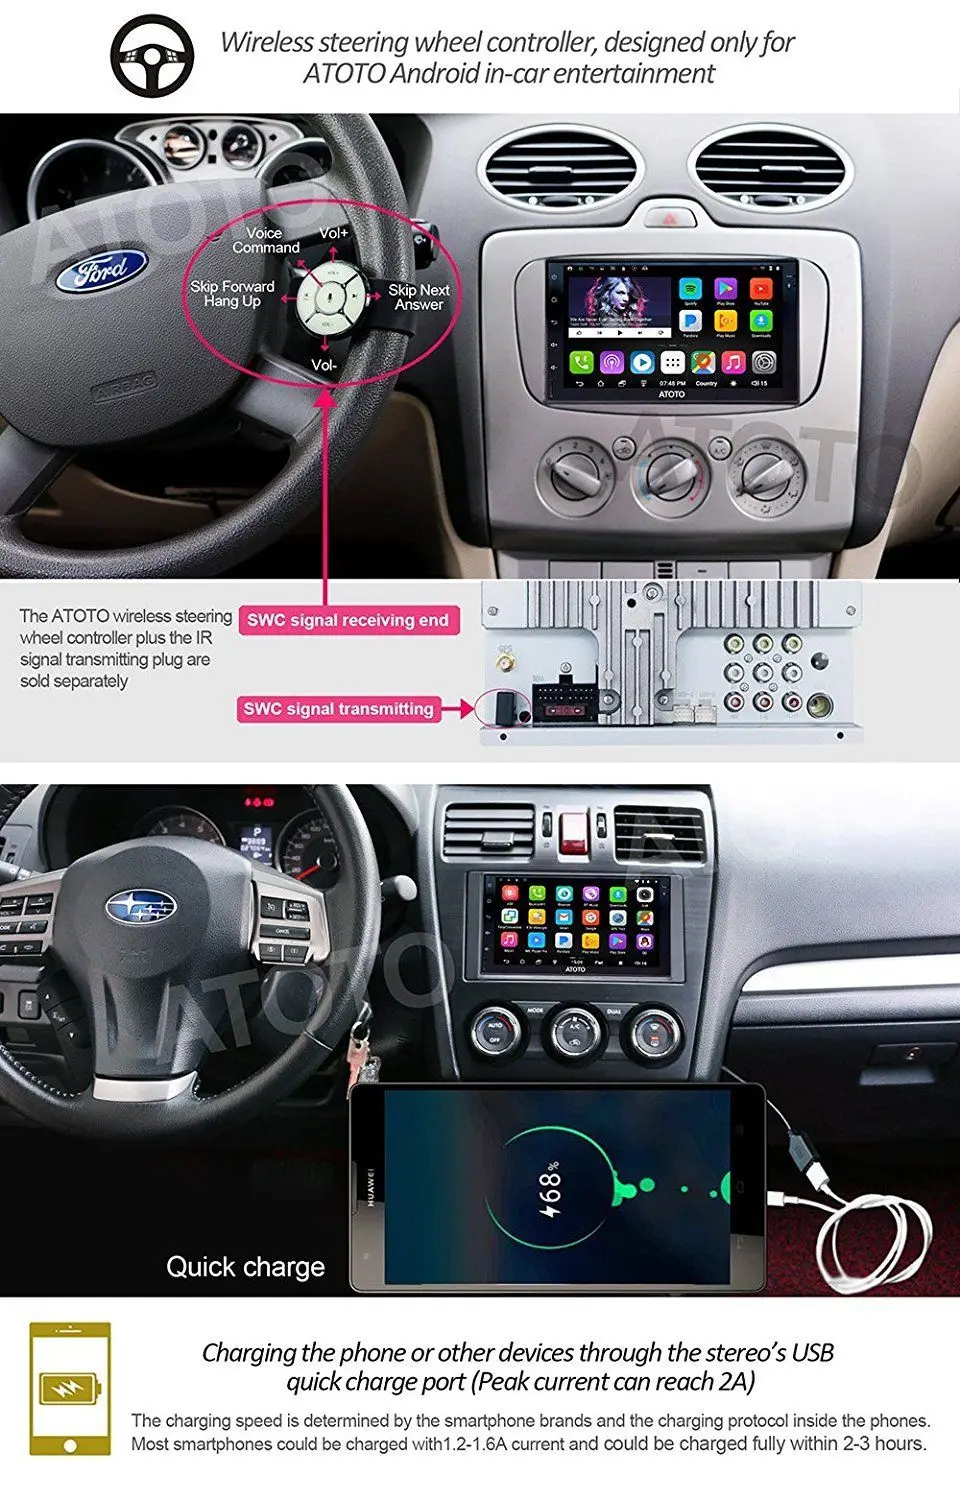 ATOTO A6 doble Din Android Car GPS estéreo reproductor/Dual Bluetooth/A62711PB 1G + 32G/ 2A rápido de carga/Indash Radio Multimedia/WiFi